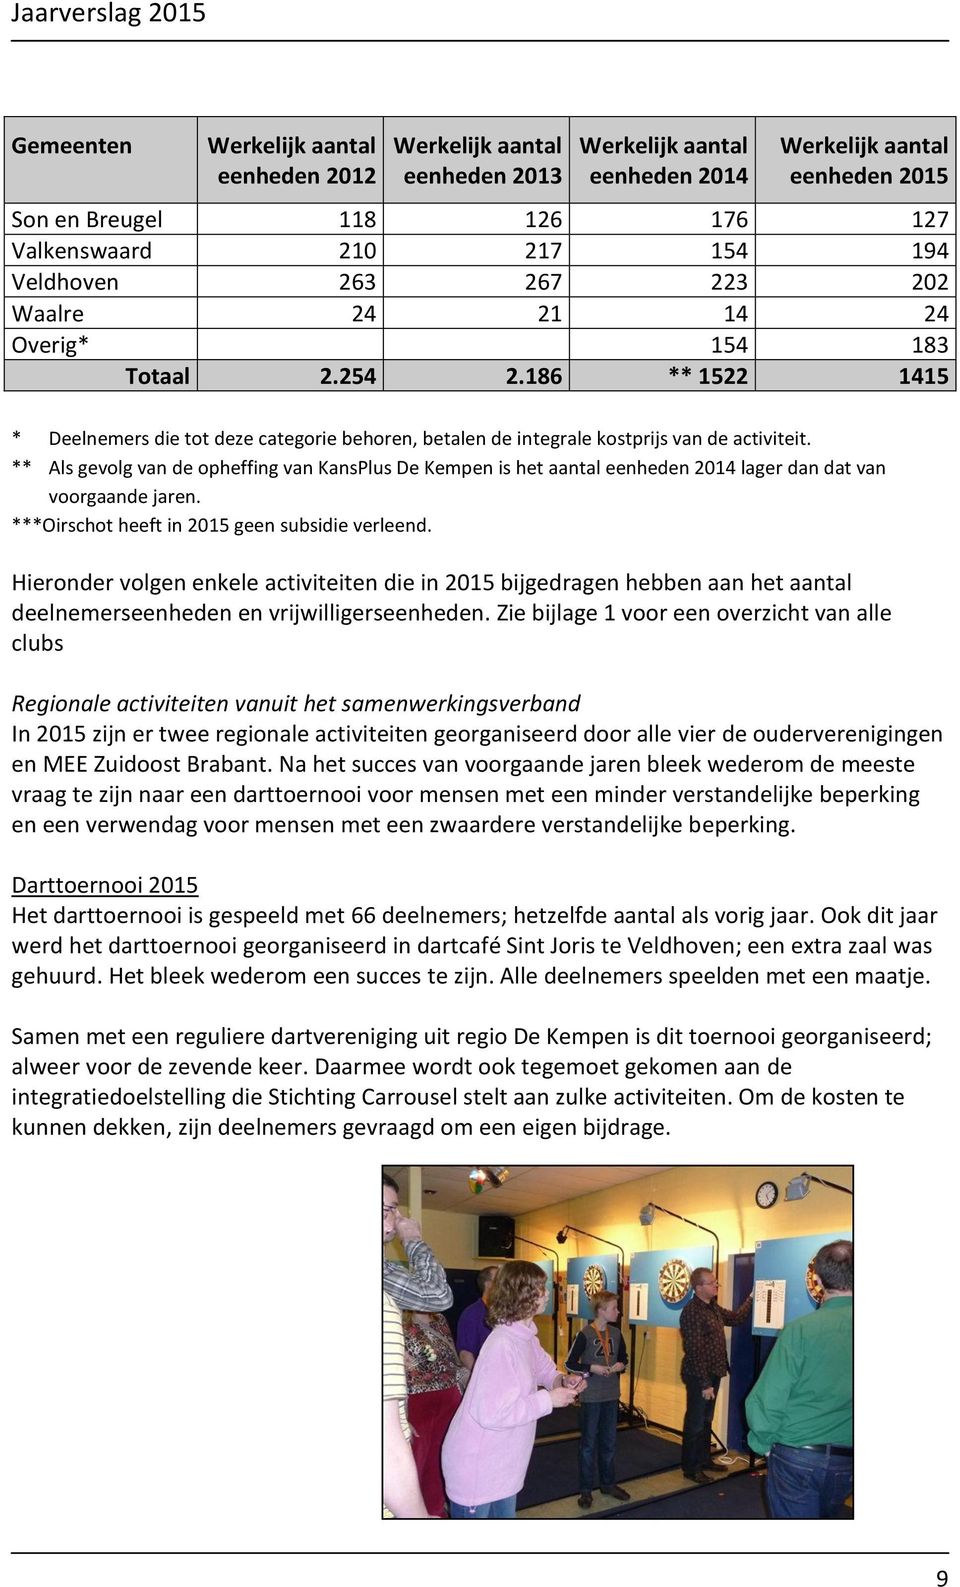 ** Als gevolg van de opheffing van KansPlus De Kempen is het aantal eenheden 2014 lager dan dat van voorgaande jaren. ***Oirschot heeft in 2015 geen subsidie verleend.